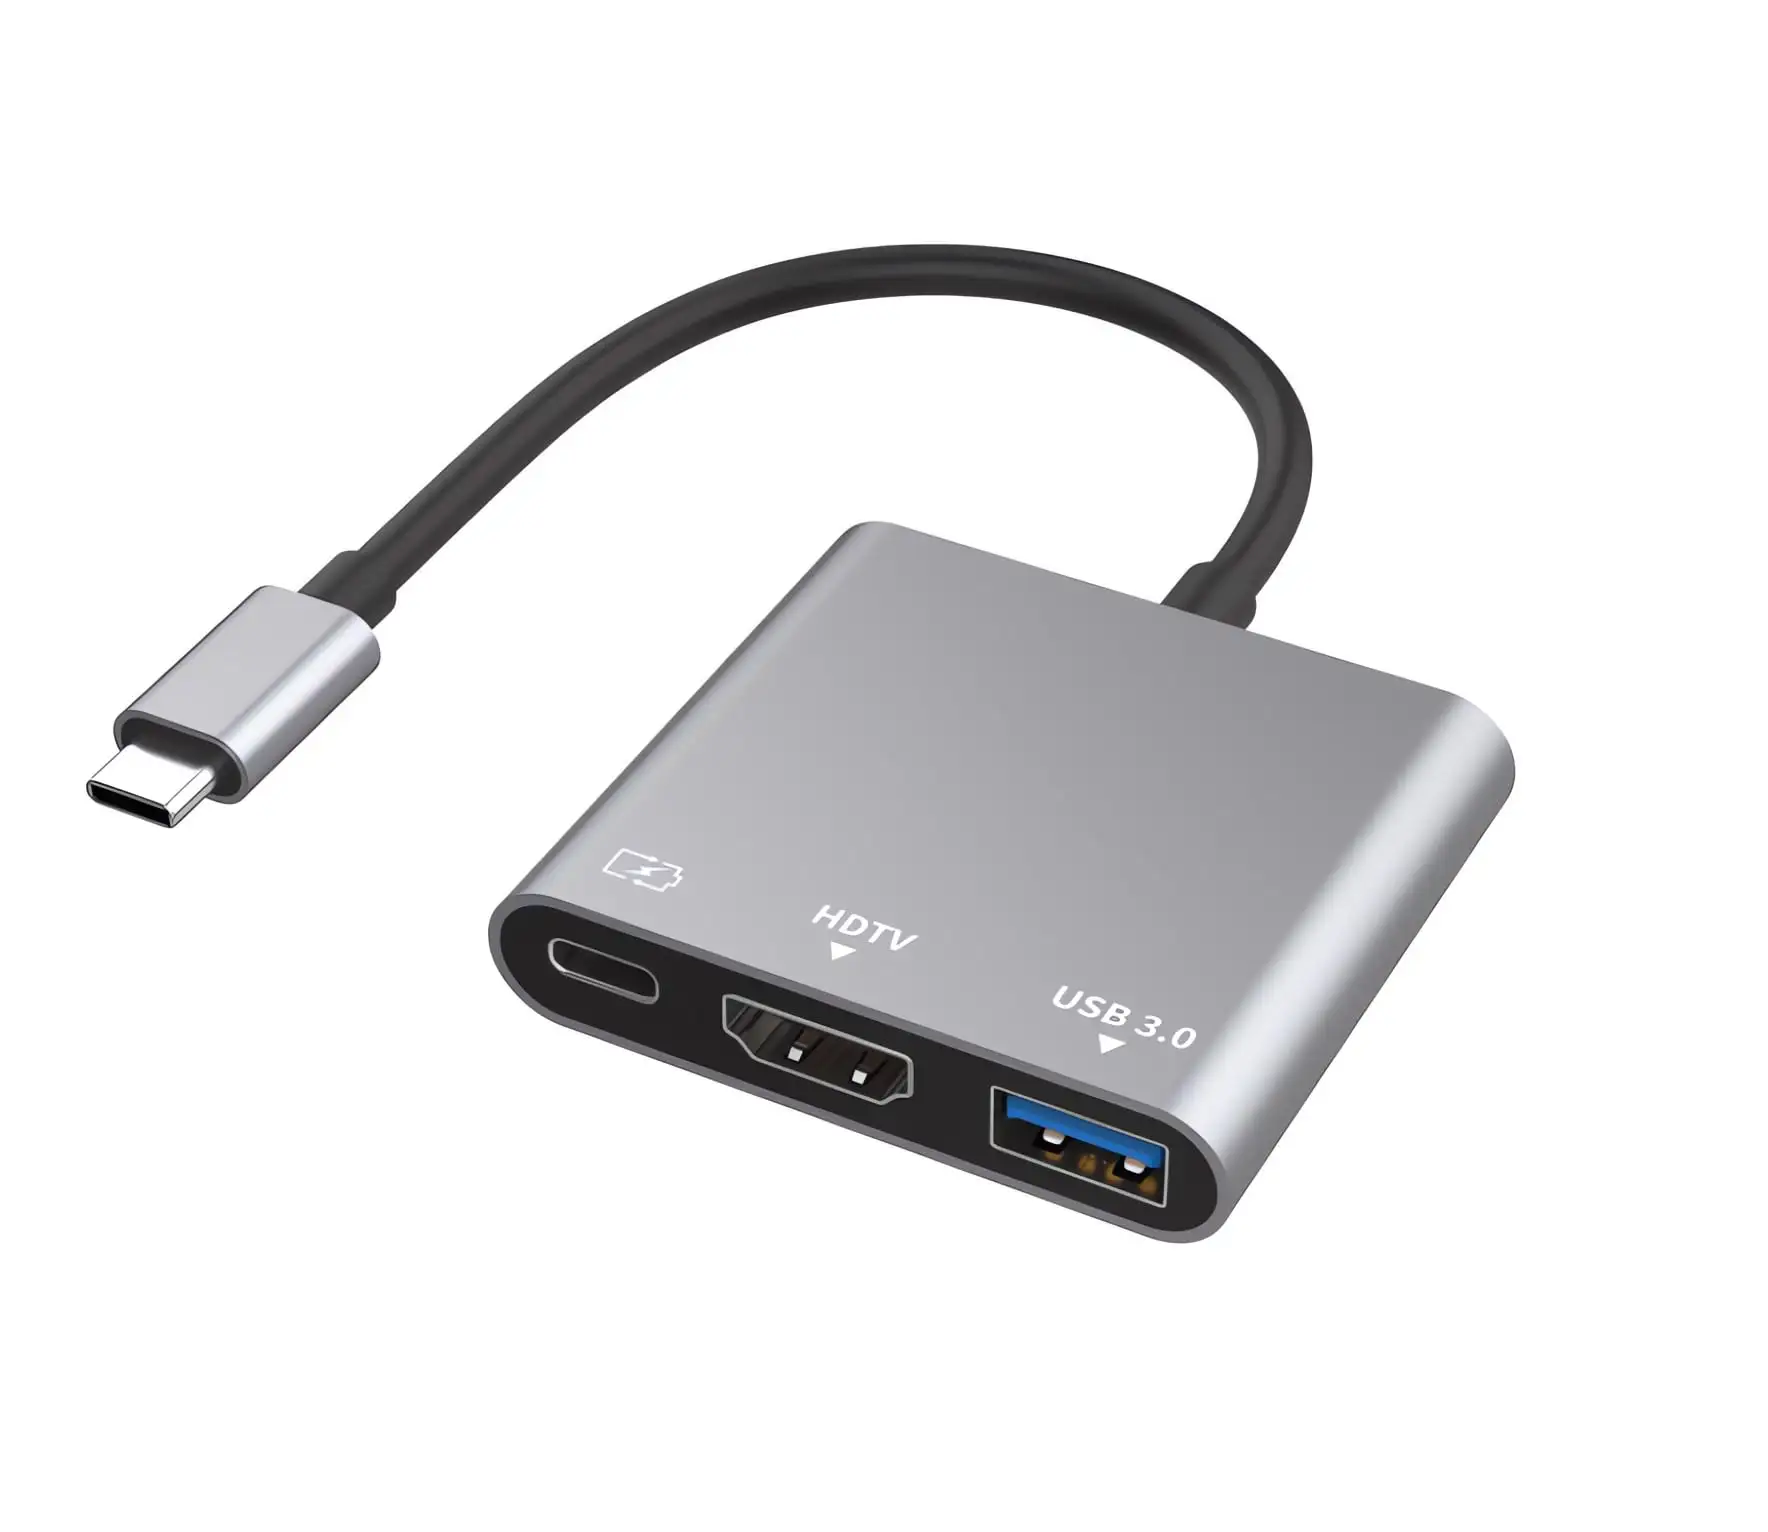 อะแดปเตอร์หลายพอร์ต av ดิจิตอล USB-c พร้อมเอาต์พุต HDMI 4K / พอร์ตชาร์จอย่างรวดเร็ว USB-C และพอร์ต USB 3.0 เข้ากันได้